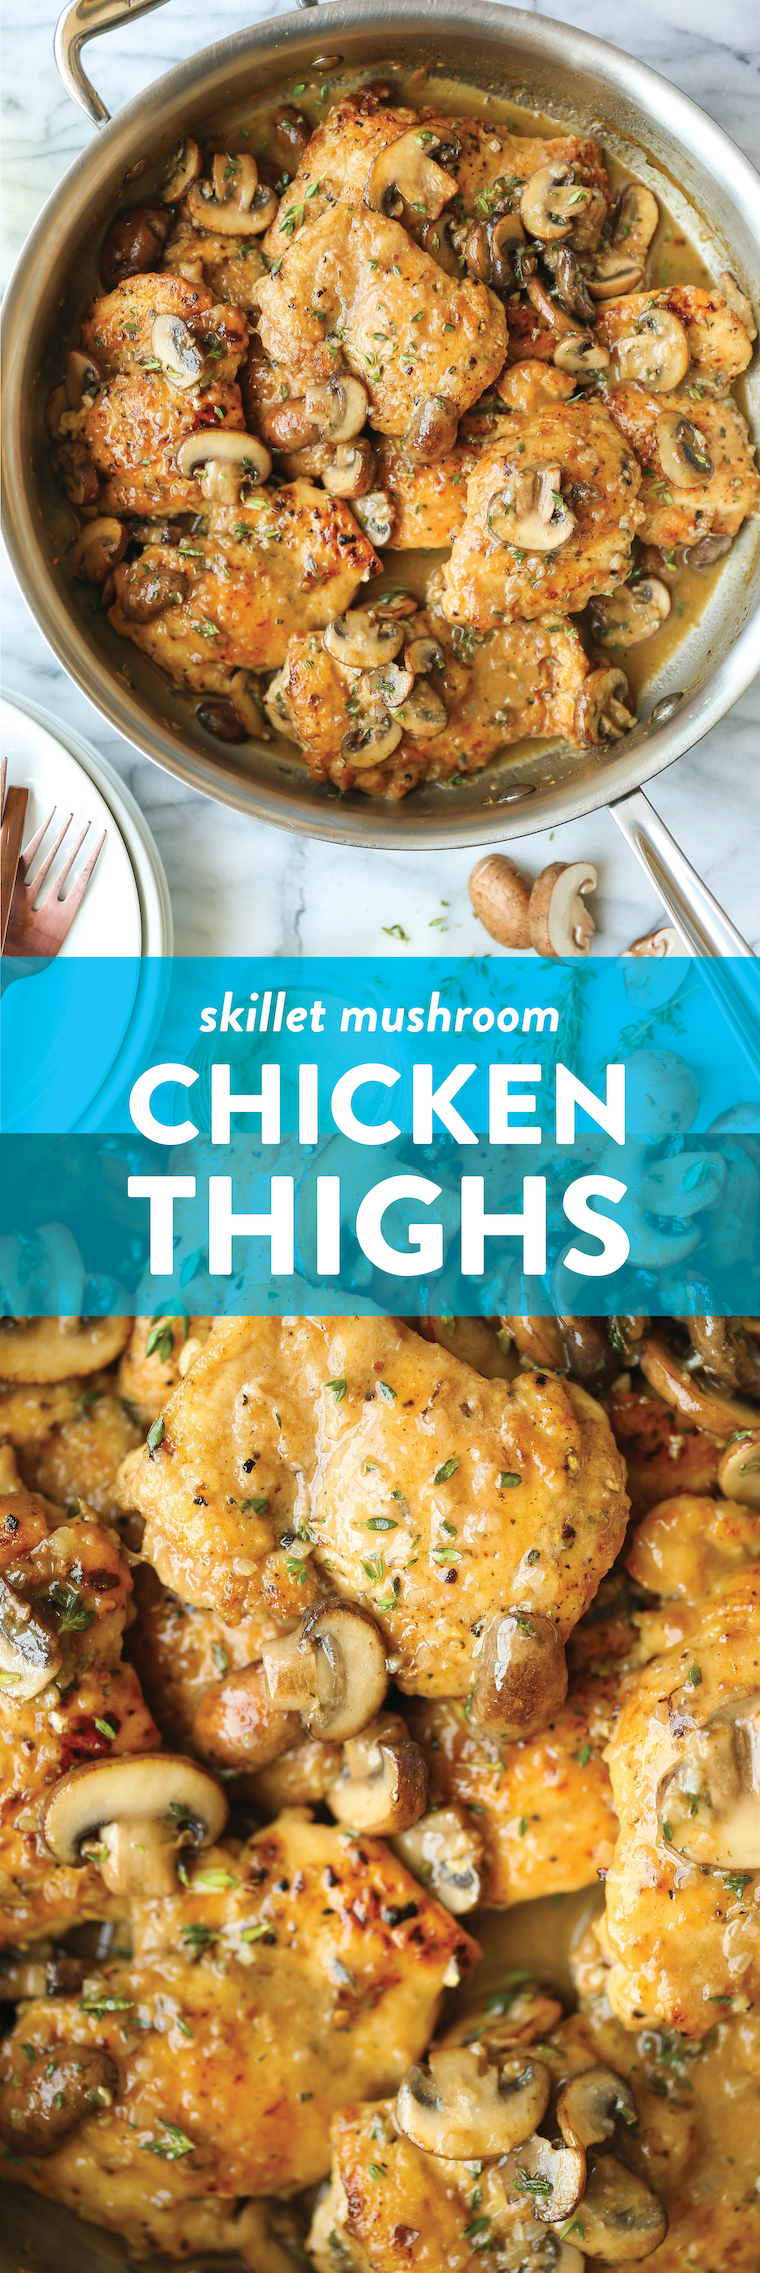 Skillet Mushroom Chicken Thigh Recipe - Golden brown, super juicy, tender chicken smothered in a garlicky, mushroom butter sauce! SO GOOD.